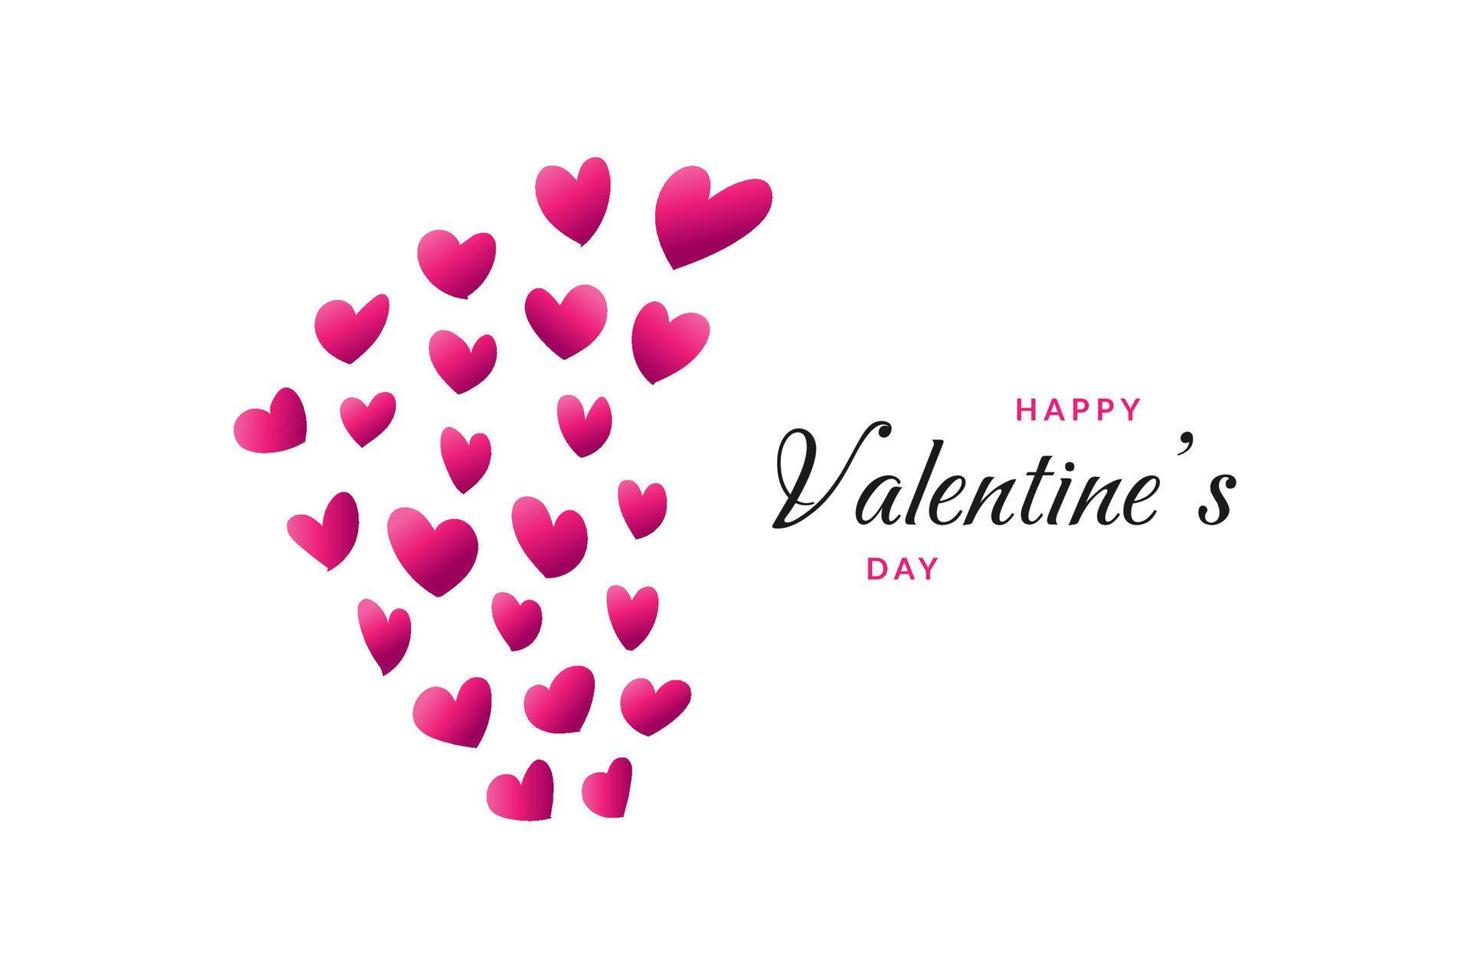 Corazones voladores rosados con saludos felices del día de San Valentín aislados en fondo blanco. fondo del día de san valentín para papel tapiz, volantes, invitación, afiches, folletos, pancartas o postales vector